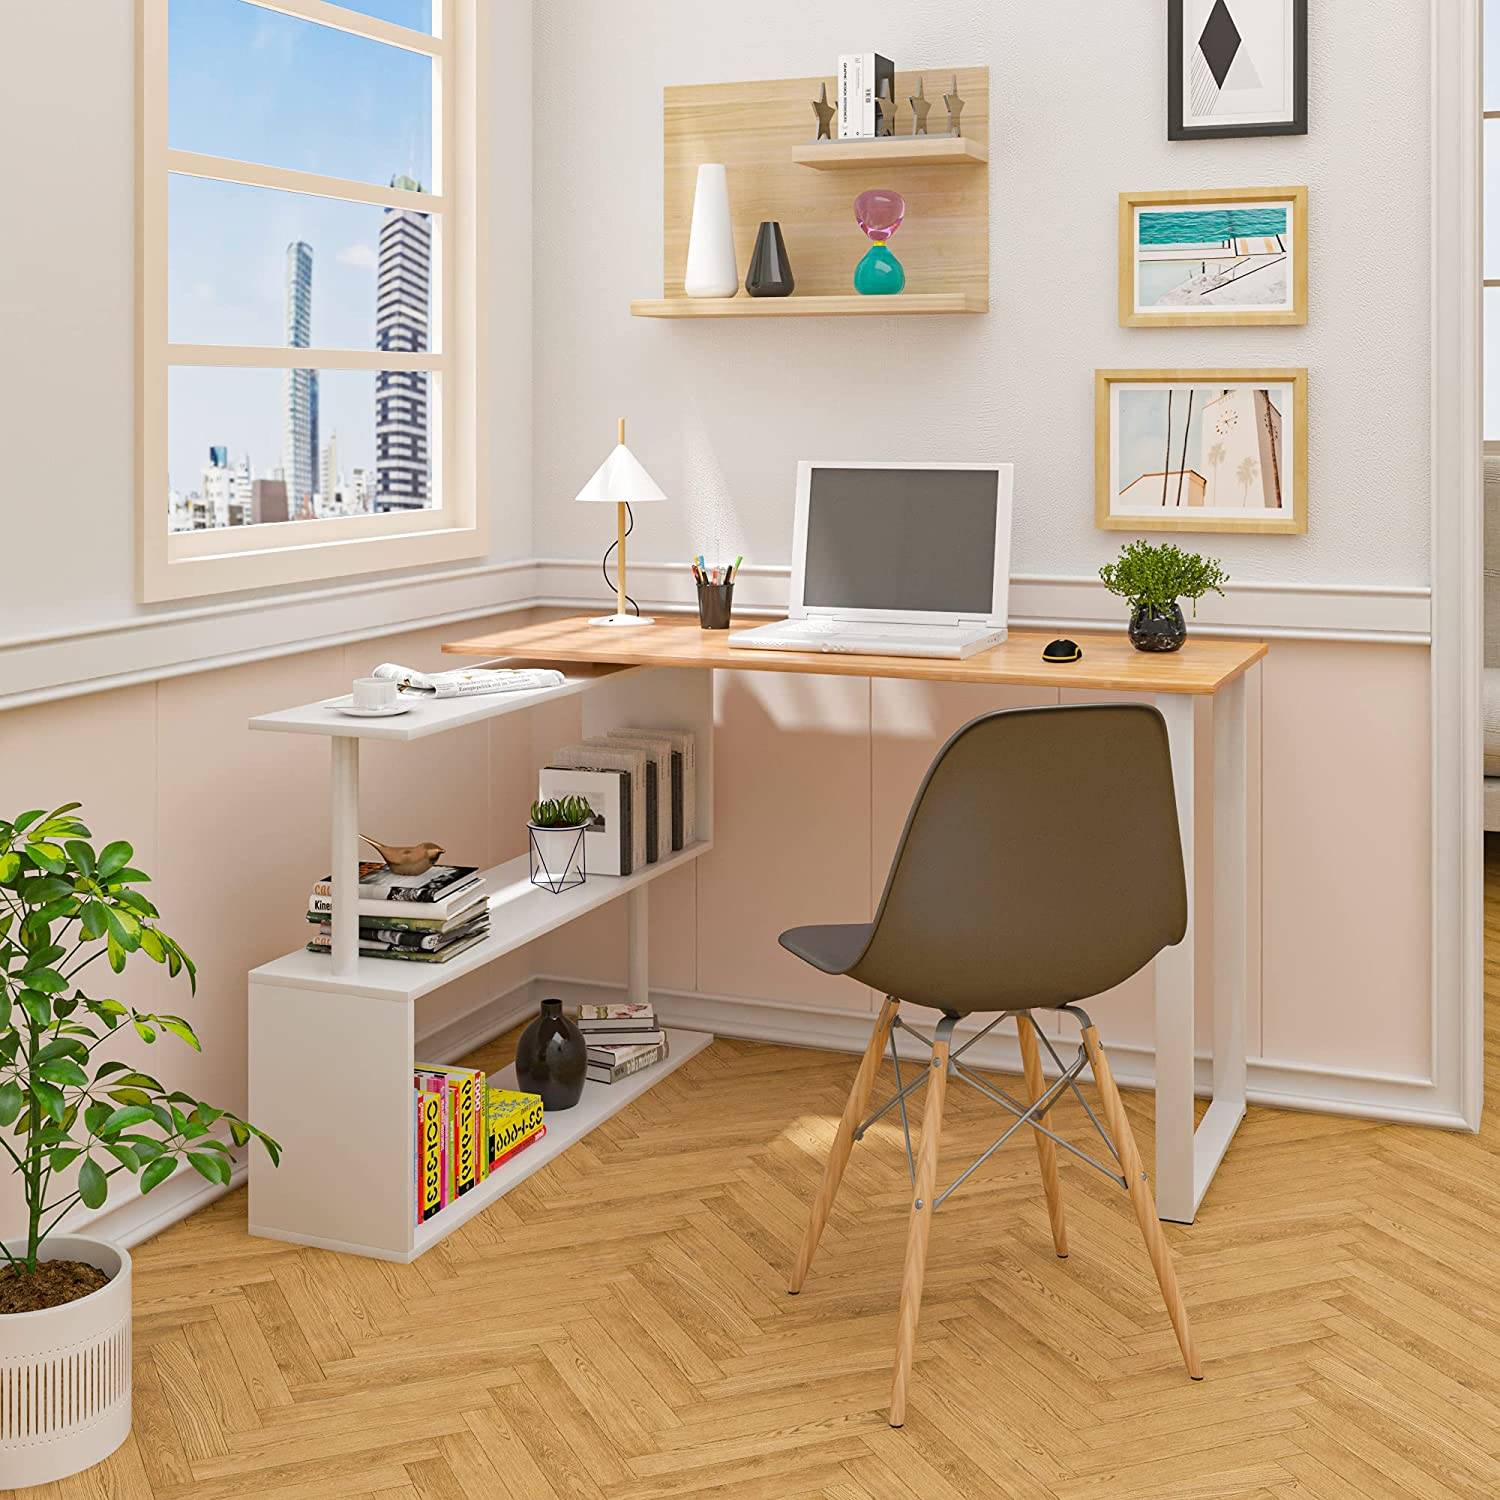 Muebles de salón modernos: un mini escritorio muy completo para salones pequeños con superficie de madera y estantería para mantener el orden. 